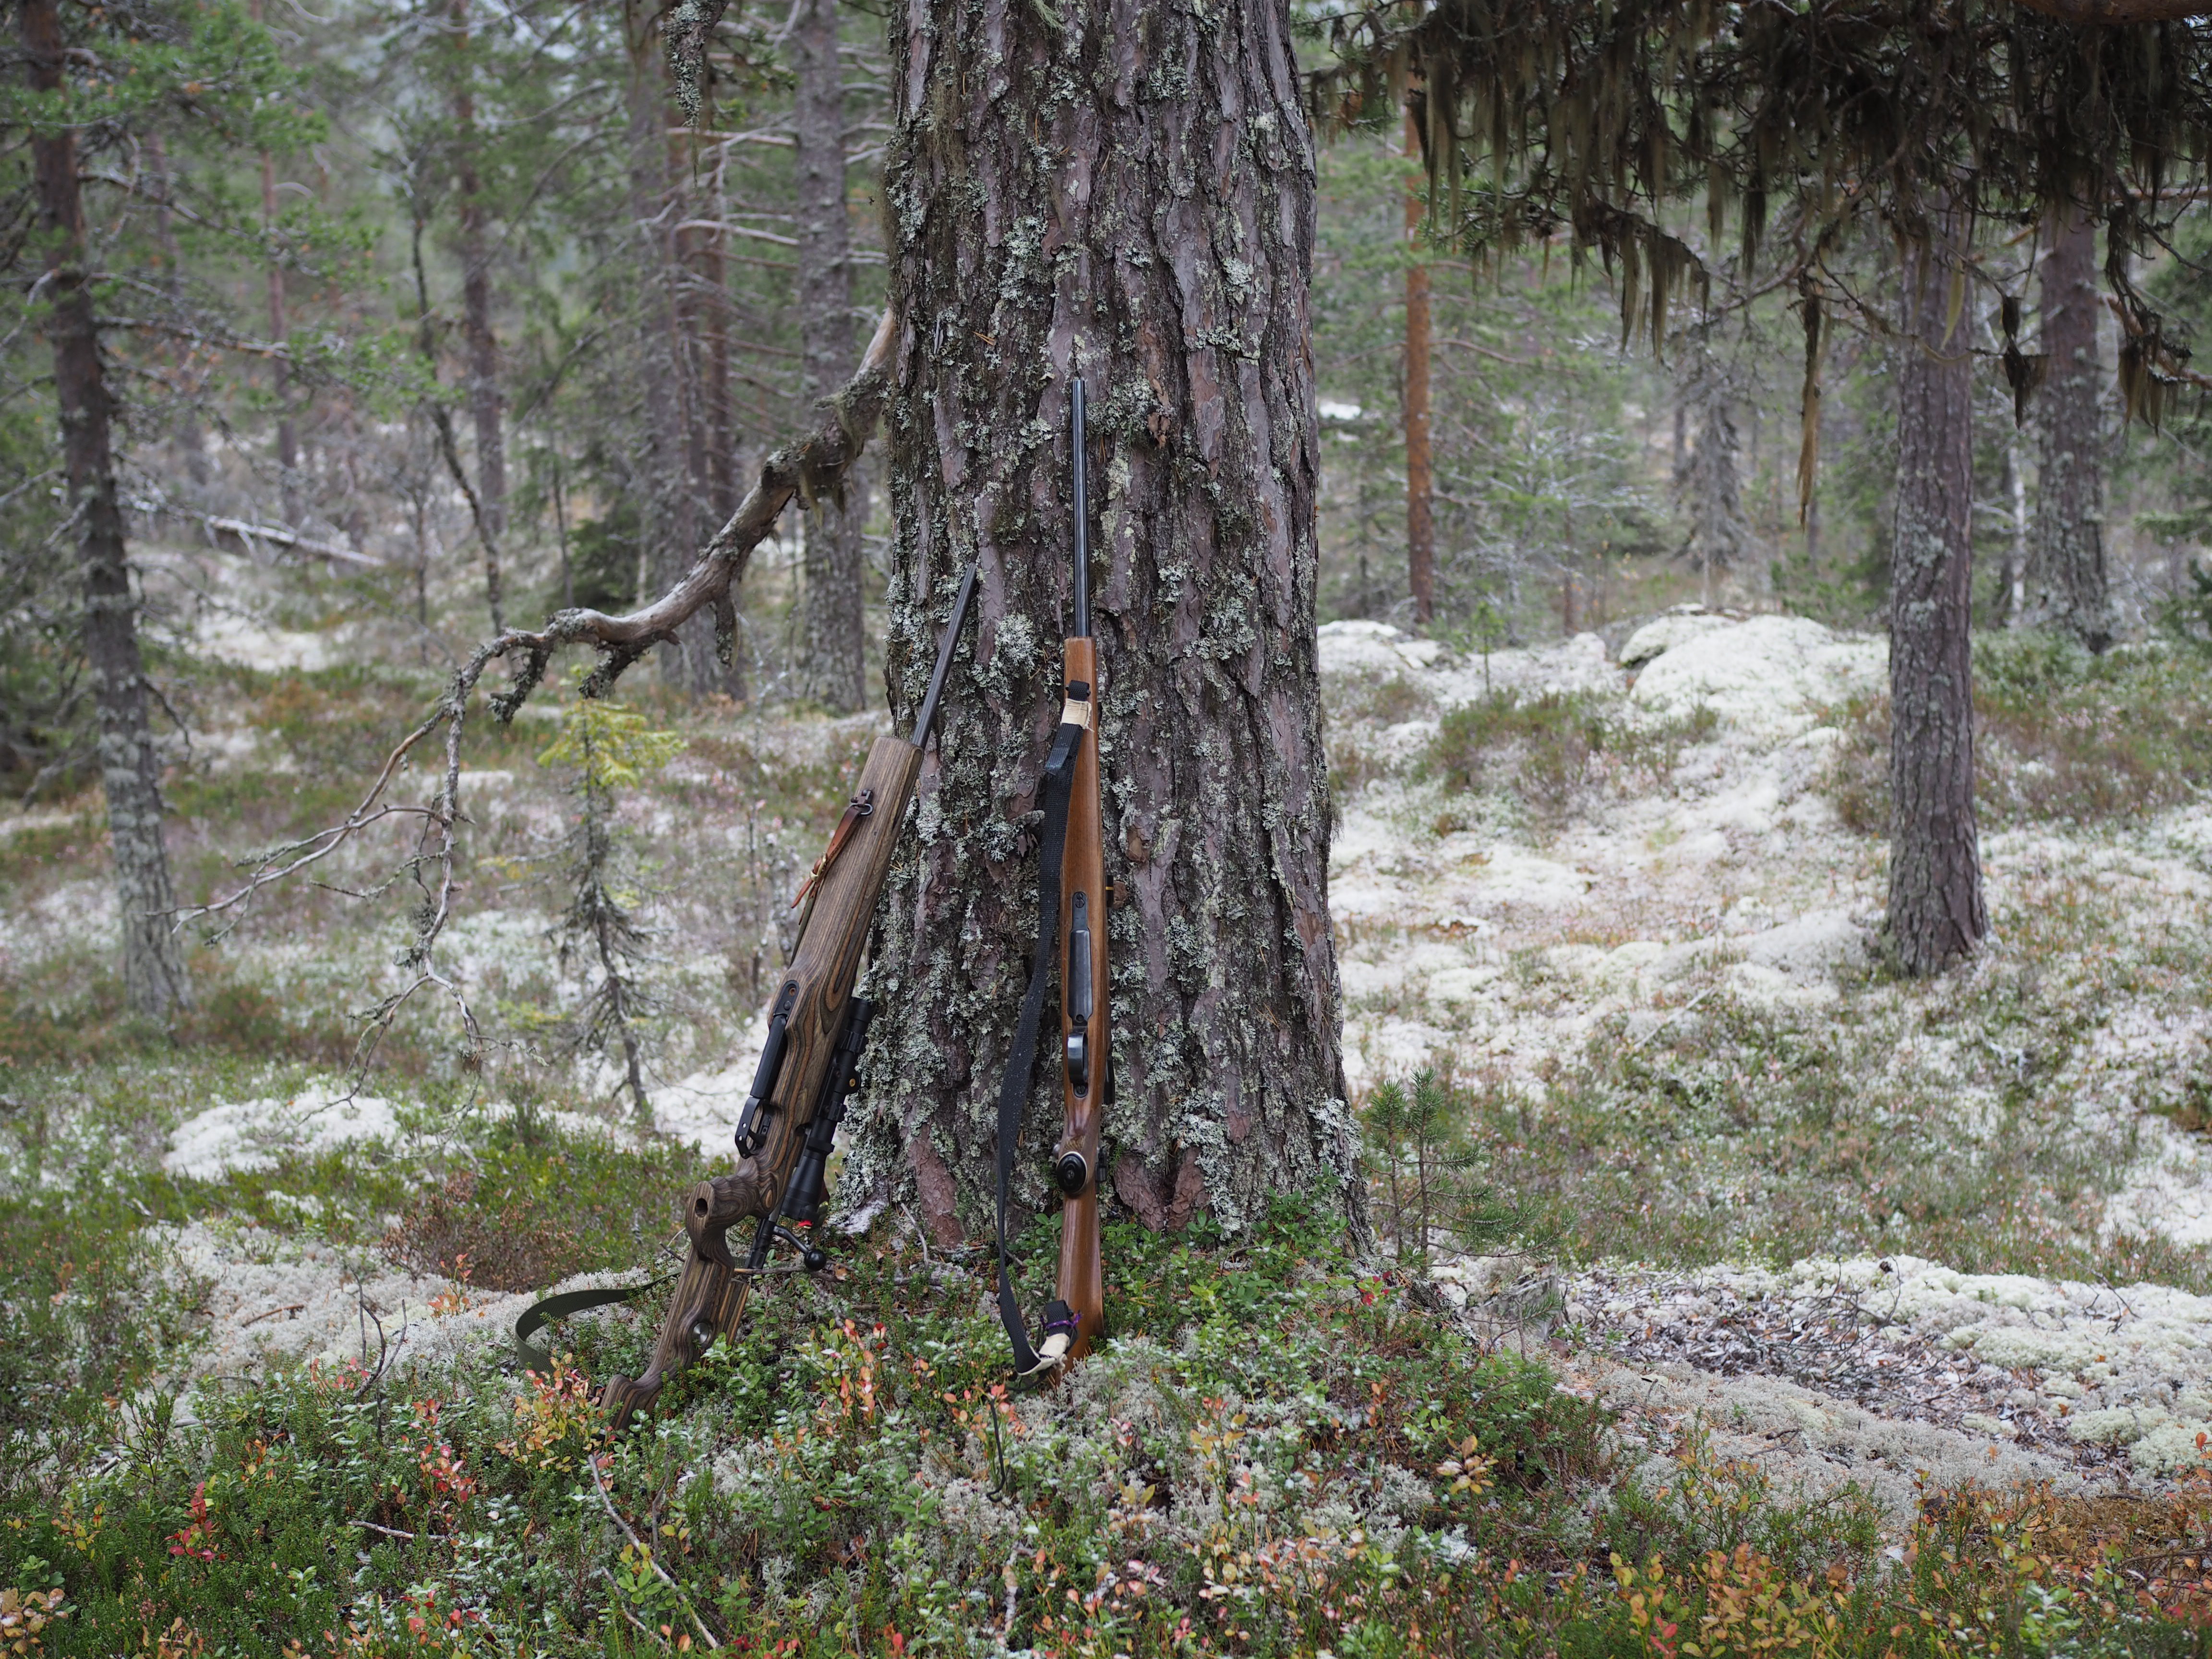 The Norwegian Hunt (Jakten)